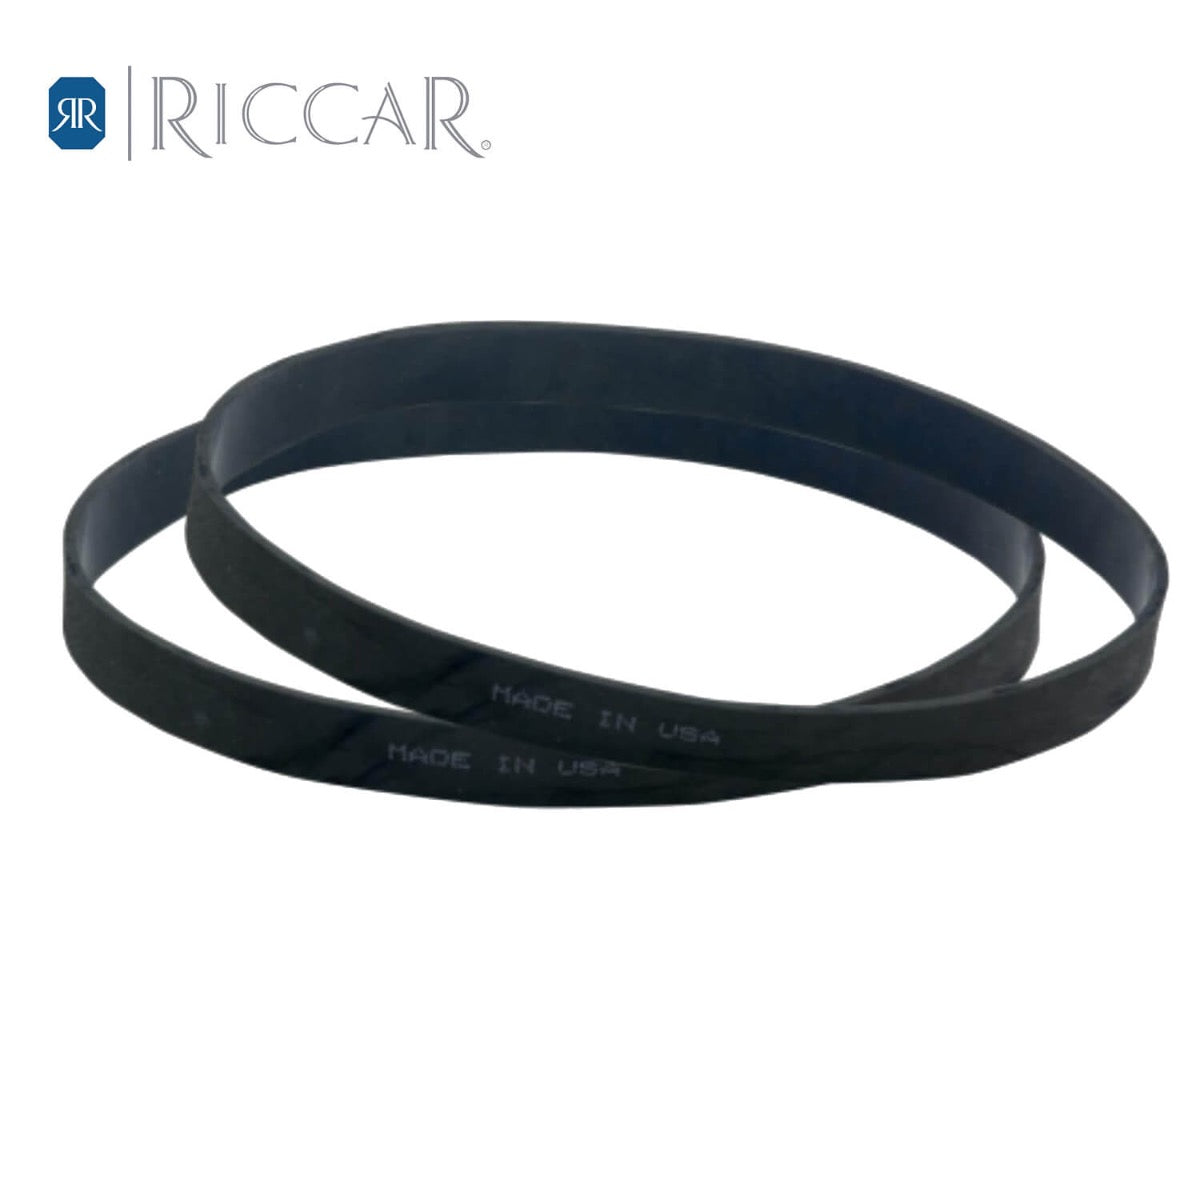 Riccar R25